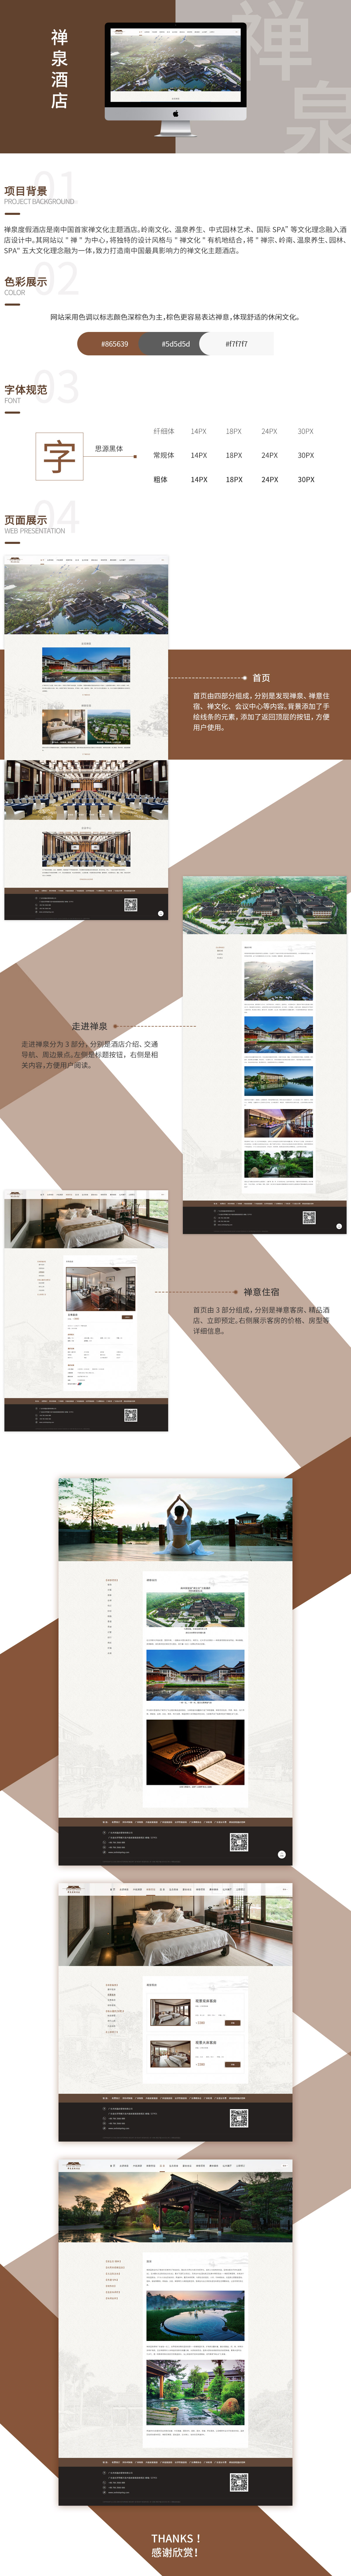 禅泉度假酒店品牌网站案例